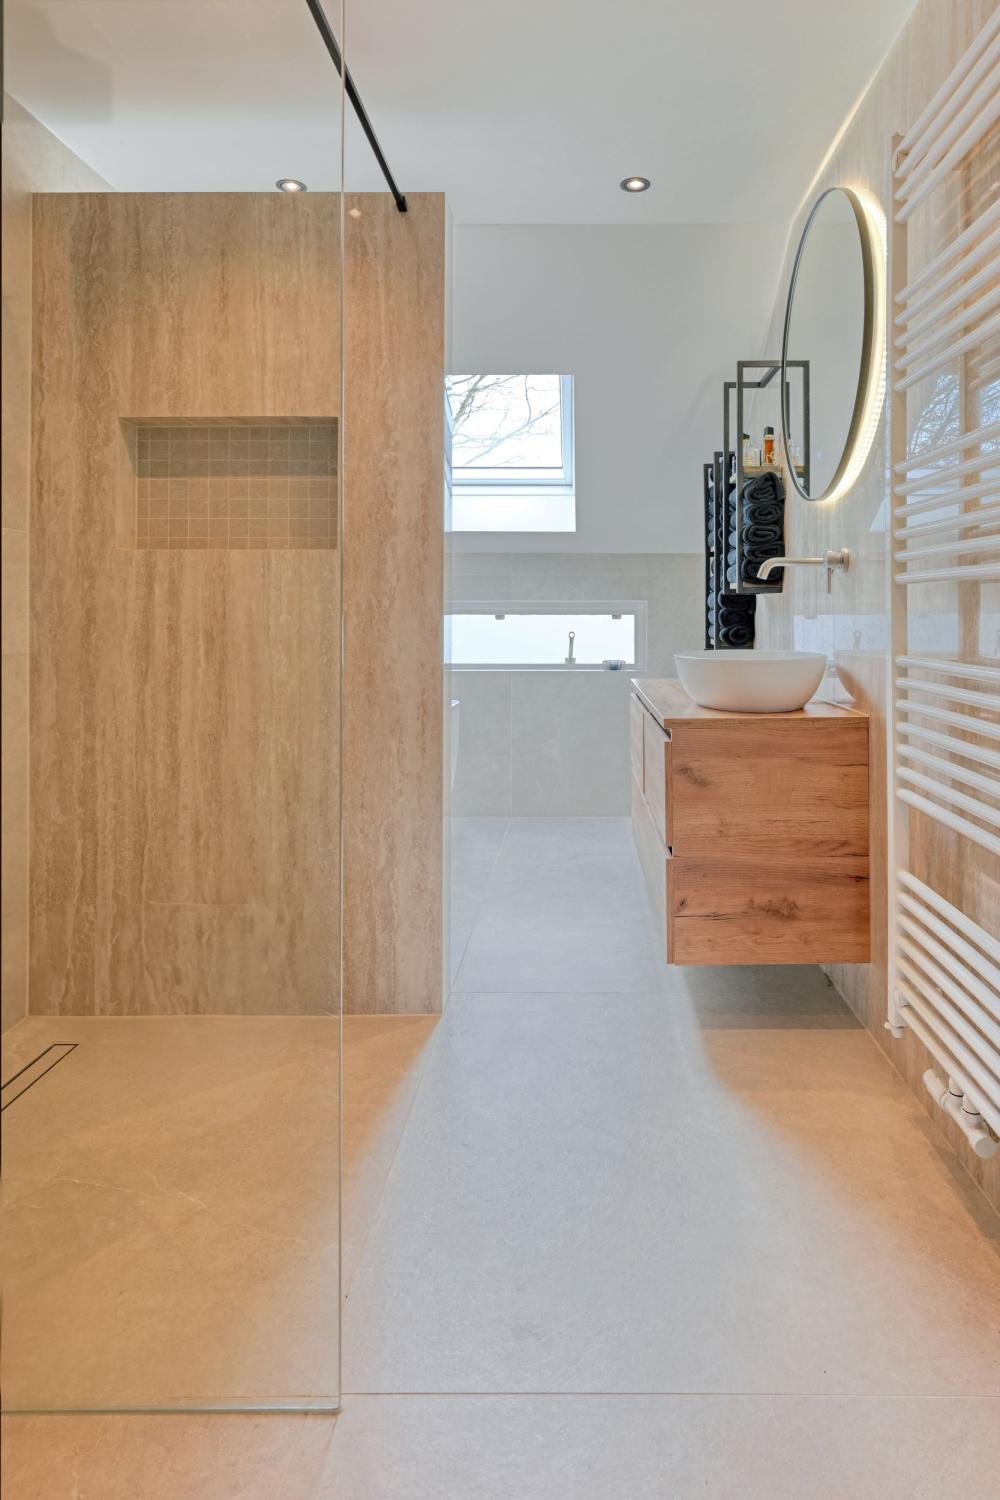 Exclusieve badkamer, toilet en keuken met keramisch blad in woning Harderwijk